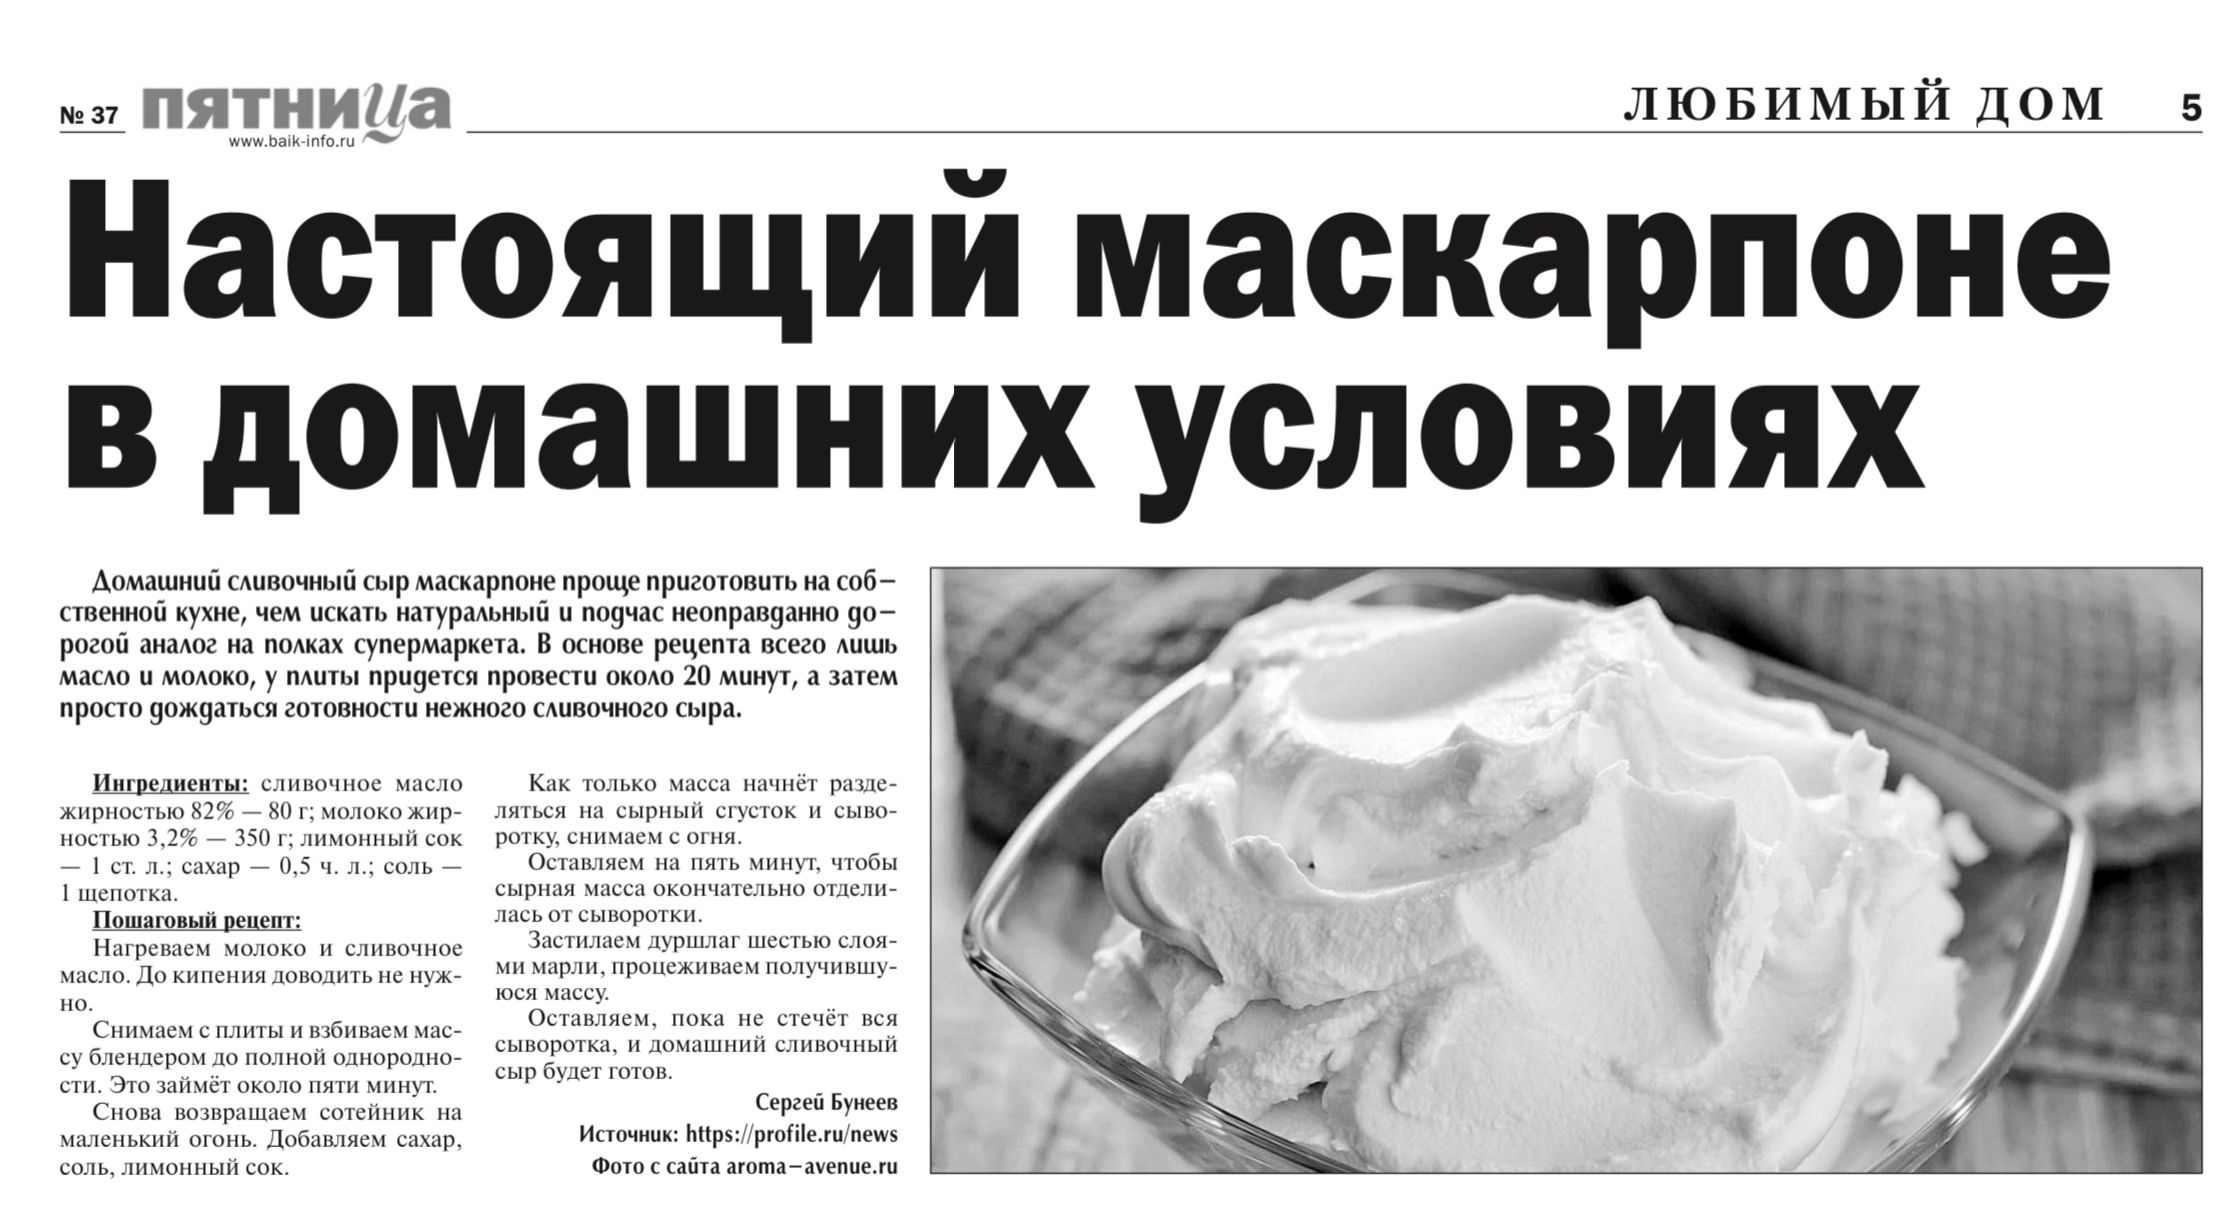 Как сделать Маскарпоне в домашних условиях - рецепт, видео | Новости РБК Украина